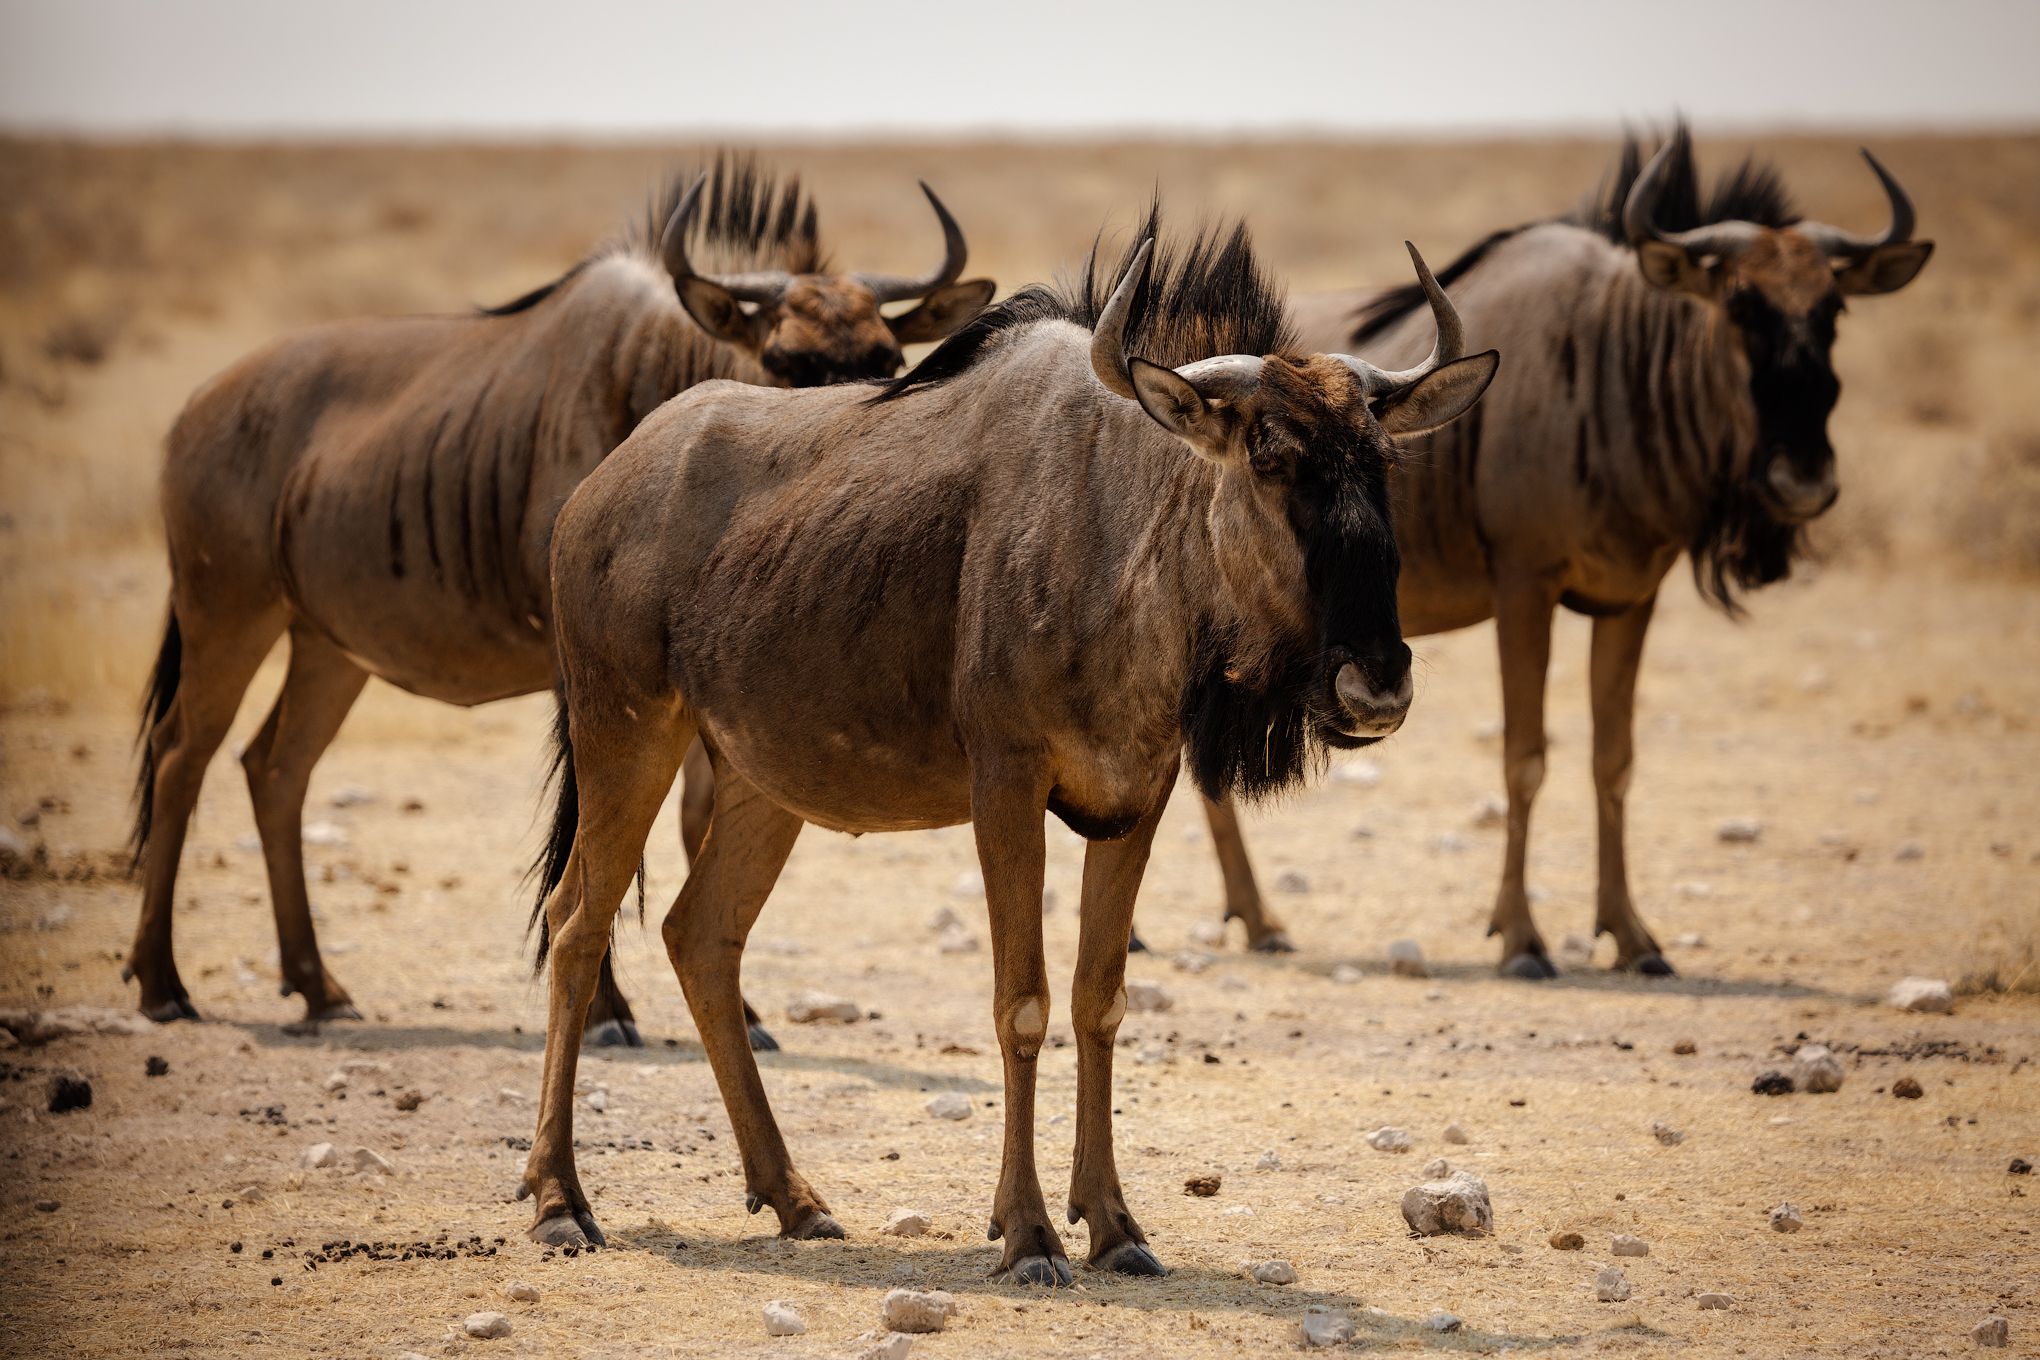 #Африка #Намибия #Этоша #голубой гну #национальный парк #сафари #животные #africa #namibia #Etosha  #animal #safari #wildebeest, Наталия Деркач